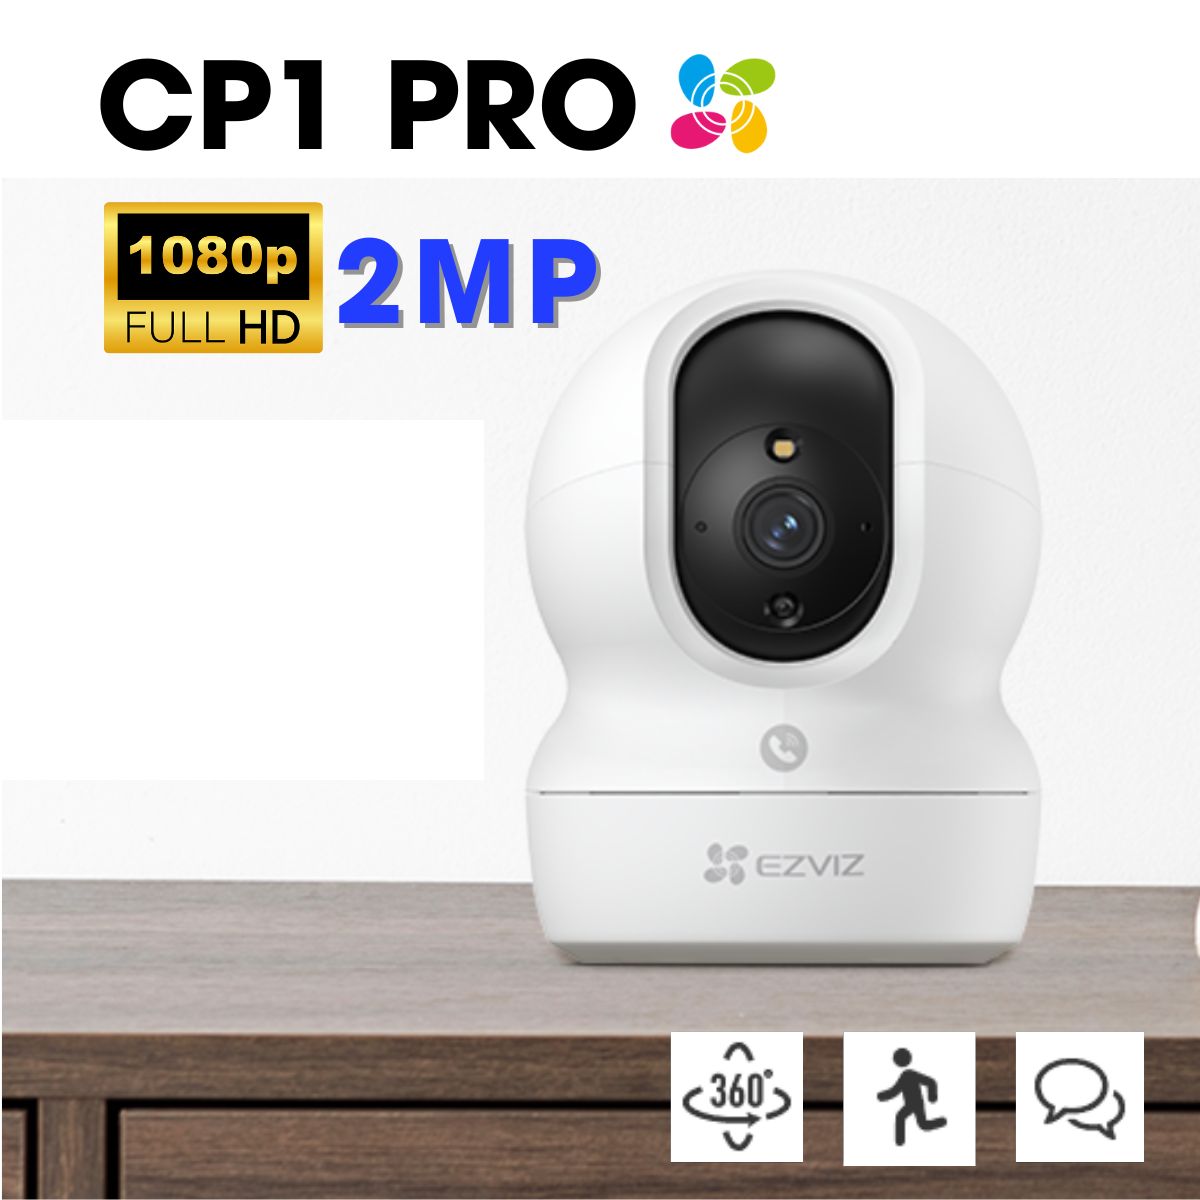 Camera Ezviz CP1 Pro 2MP 1080p, nút call đàm thoại 2 chiều, theo dõi tự động, phát hiện người tiếng ồn lớn